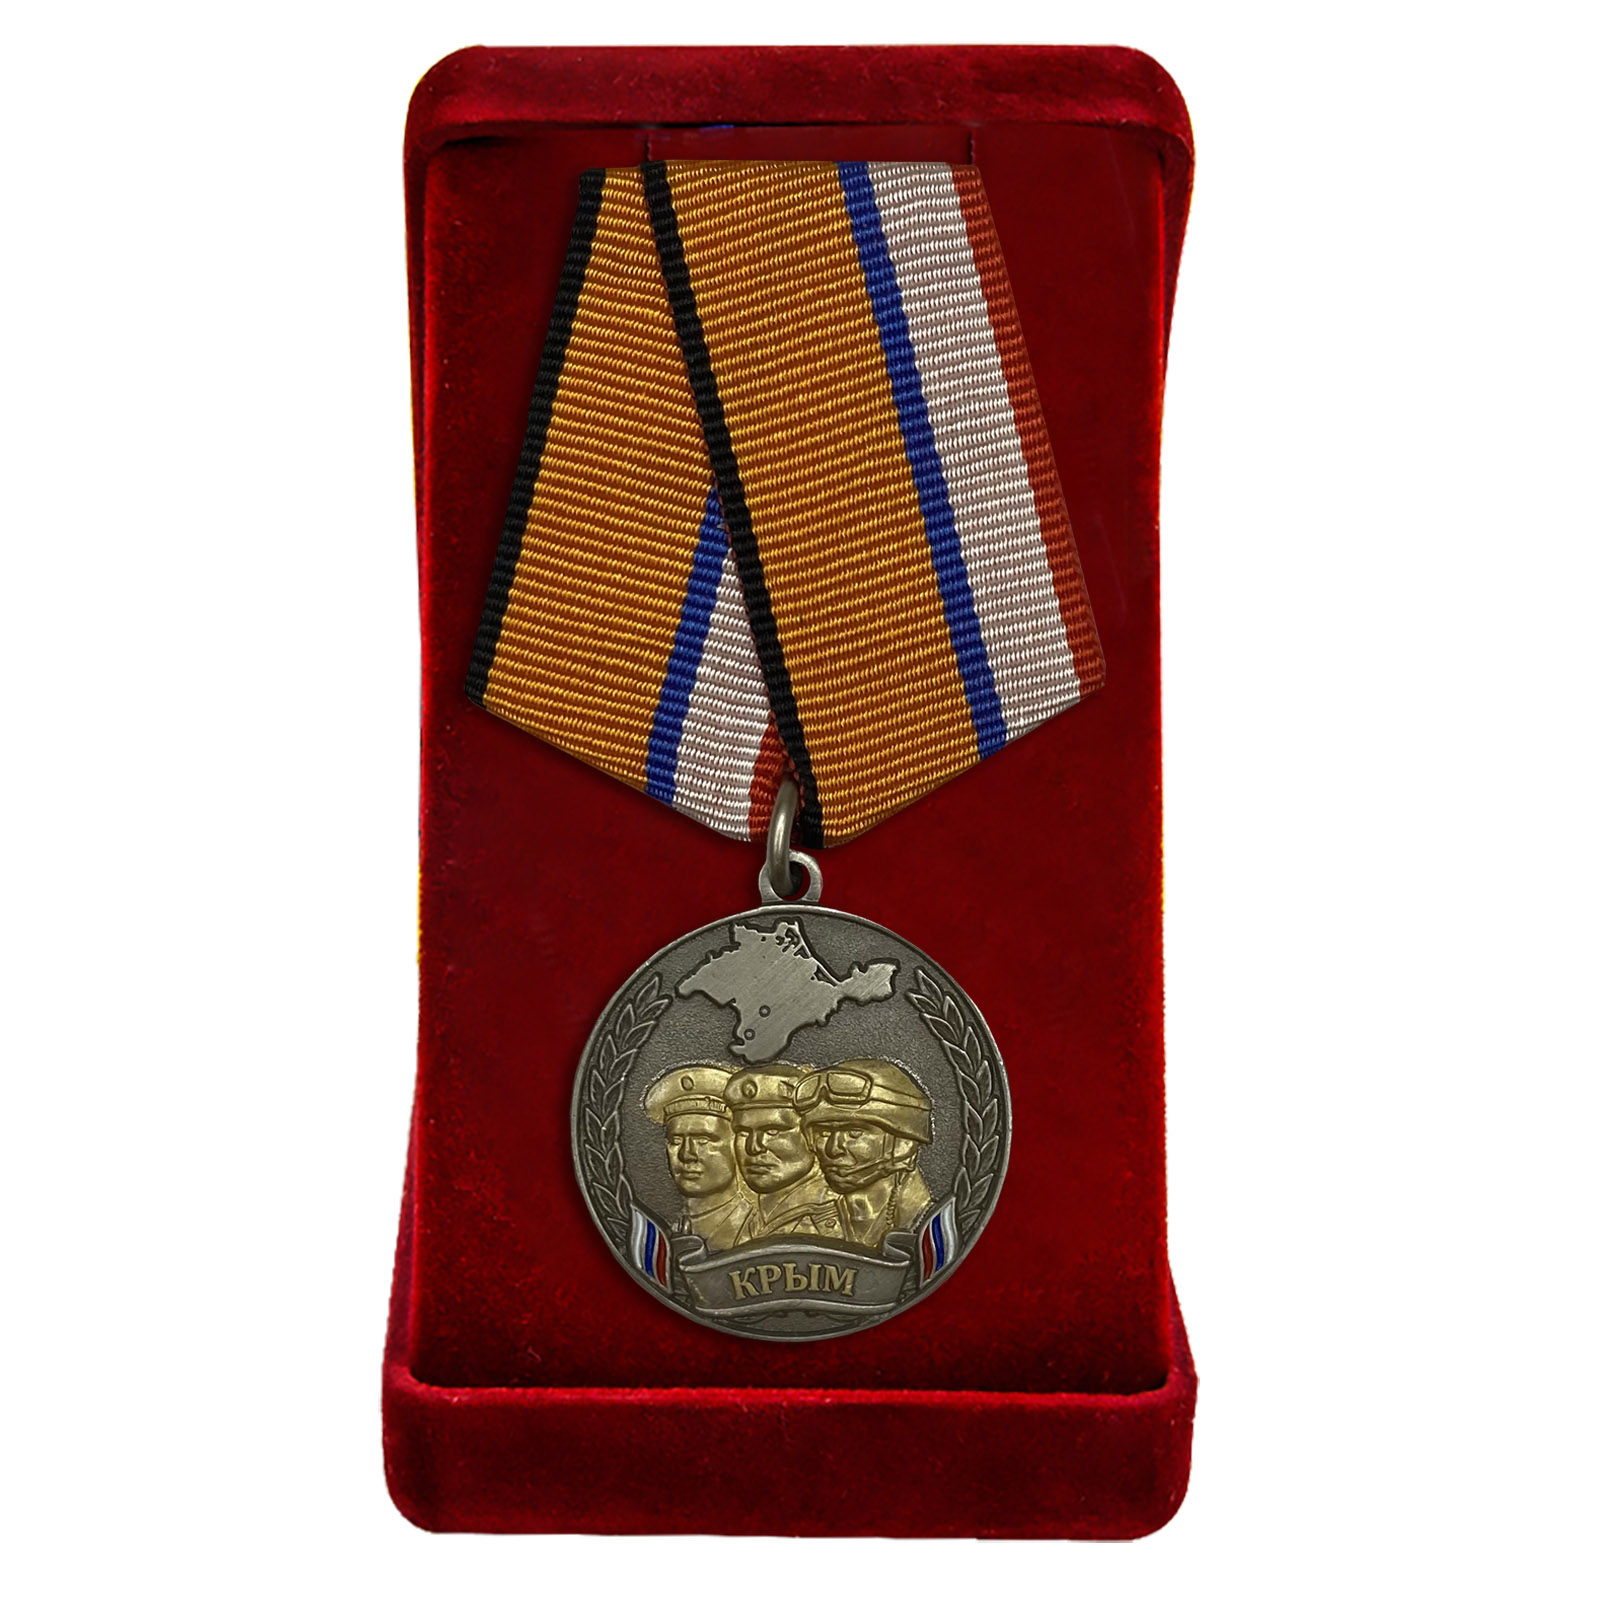 Купить памятная медаль "Боевое братство Крыма" в подарок онлайн